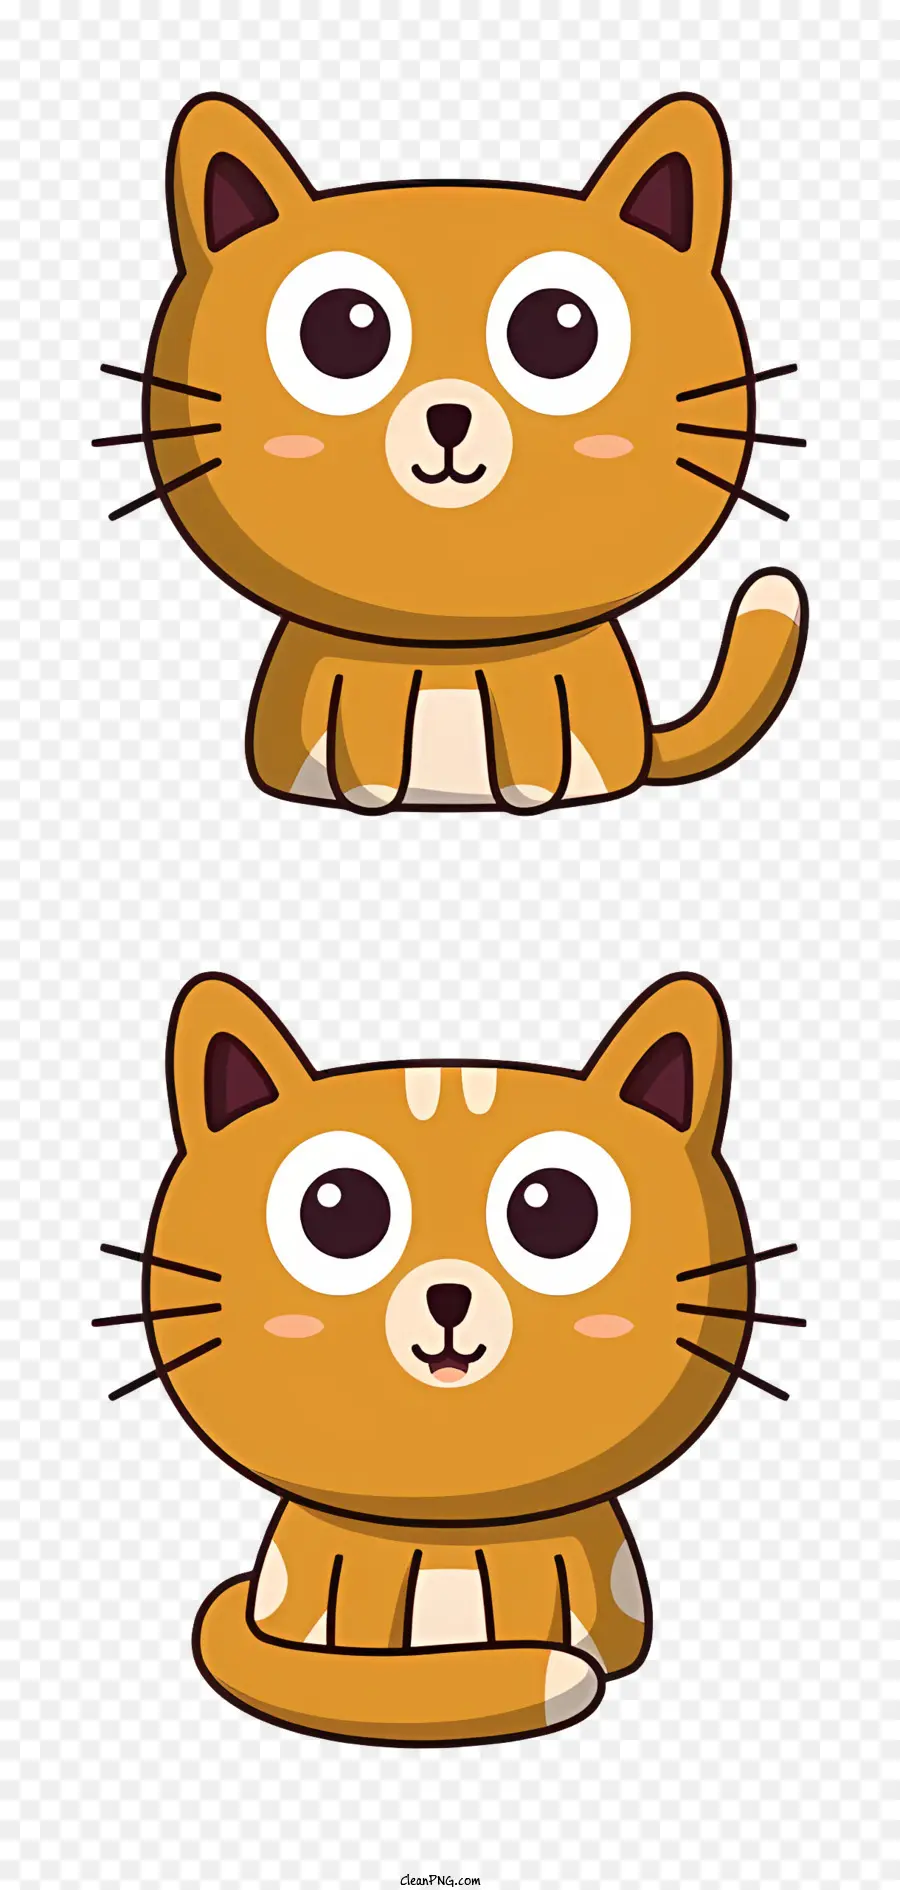 phim hoạt hình mèo - Phim hoạt hình mèo với đôi mắt rộng, biểu cảm dễ thương